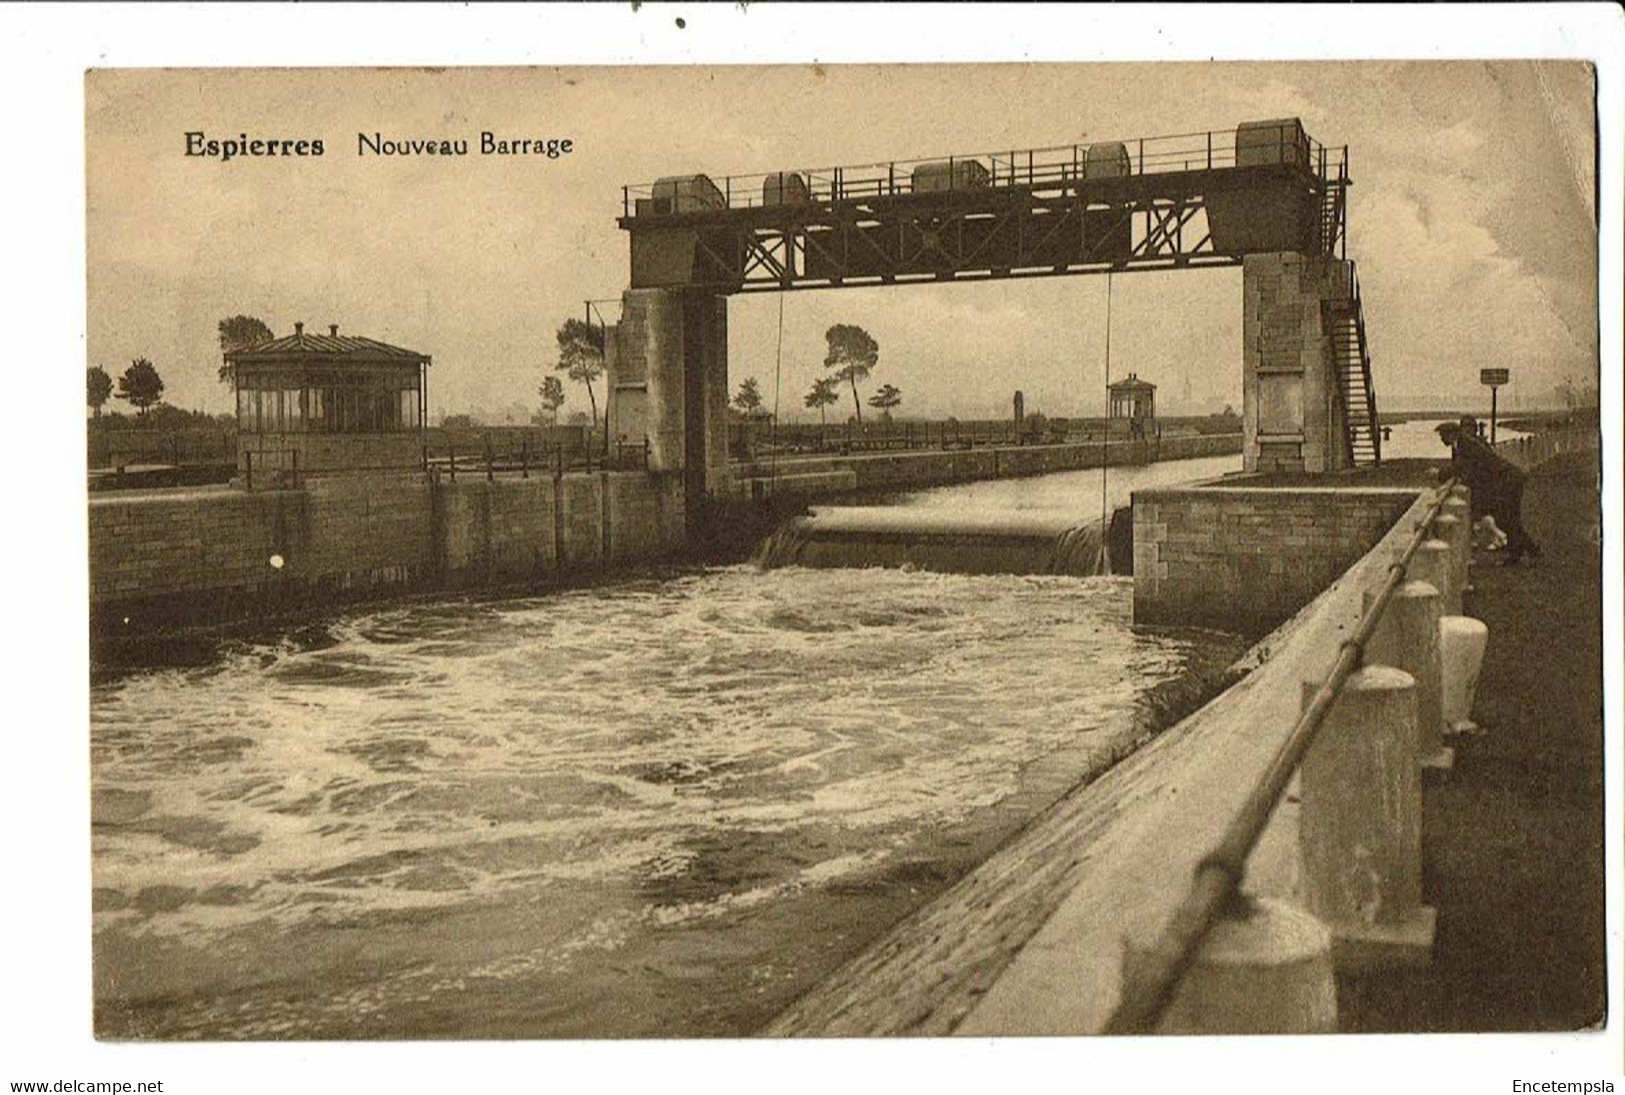 CPA-Carte Postale-Belgique-Espierres Nouveau Barrage 1934-VM21615dg - Spiere-Helkijn